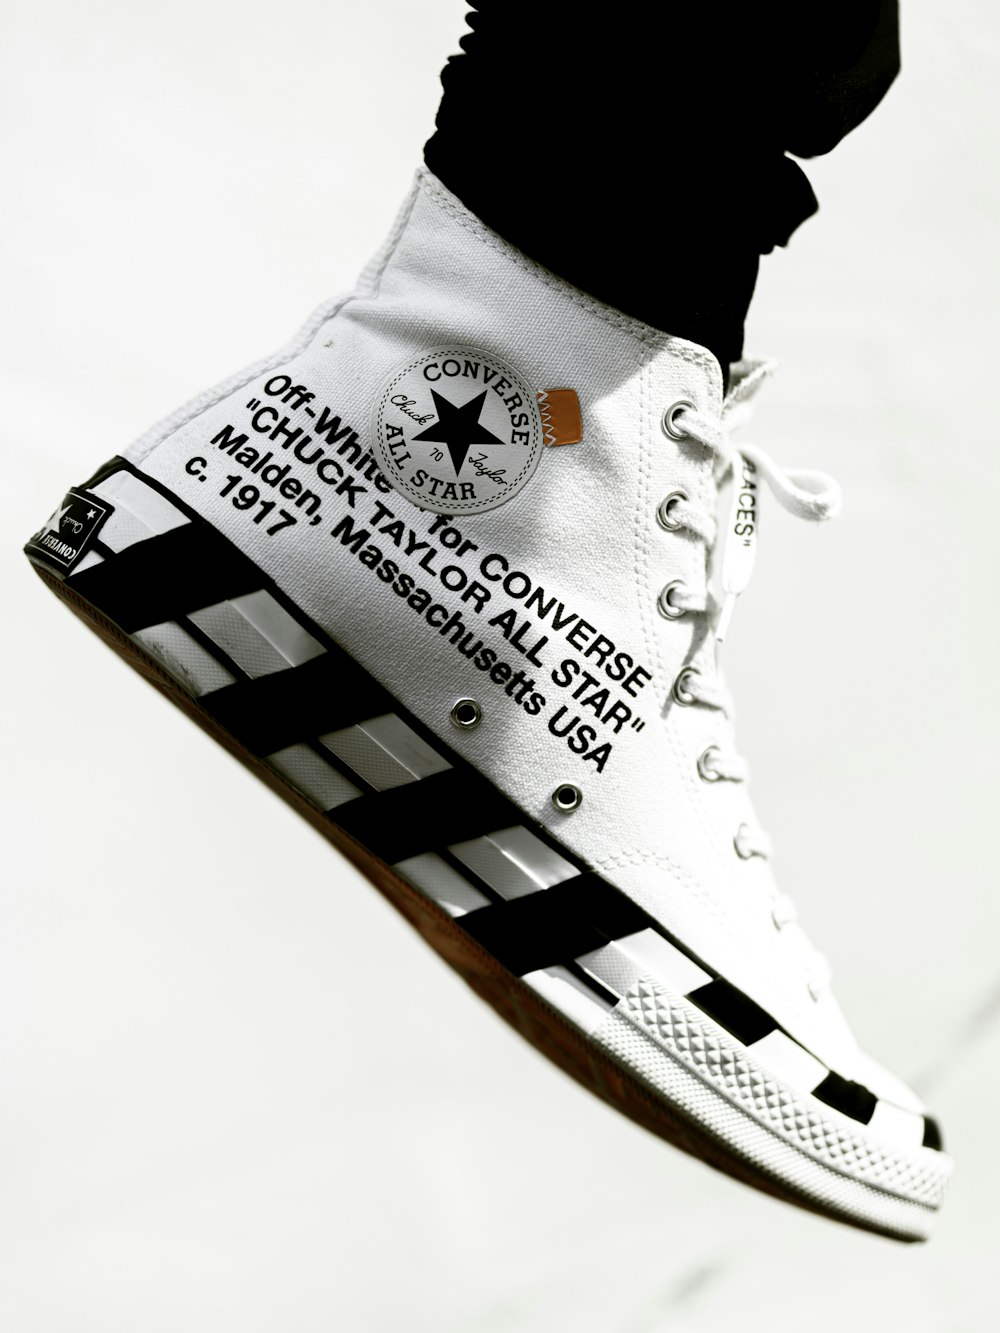 Foto zapatillas altas blancas y negras converse all star – Imagen Blanco  gratis en Unsplash